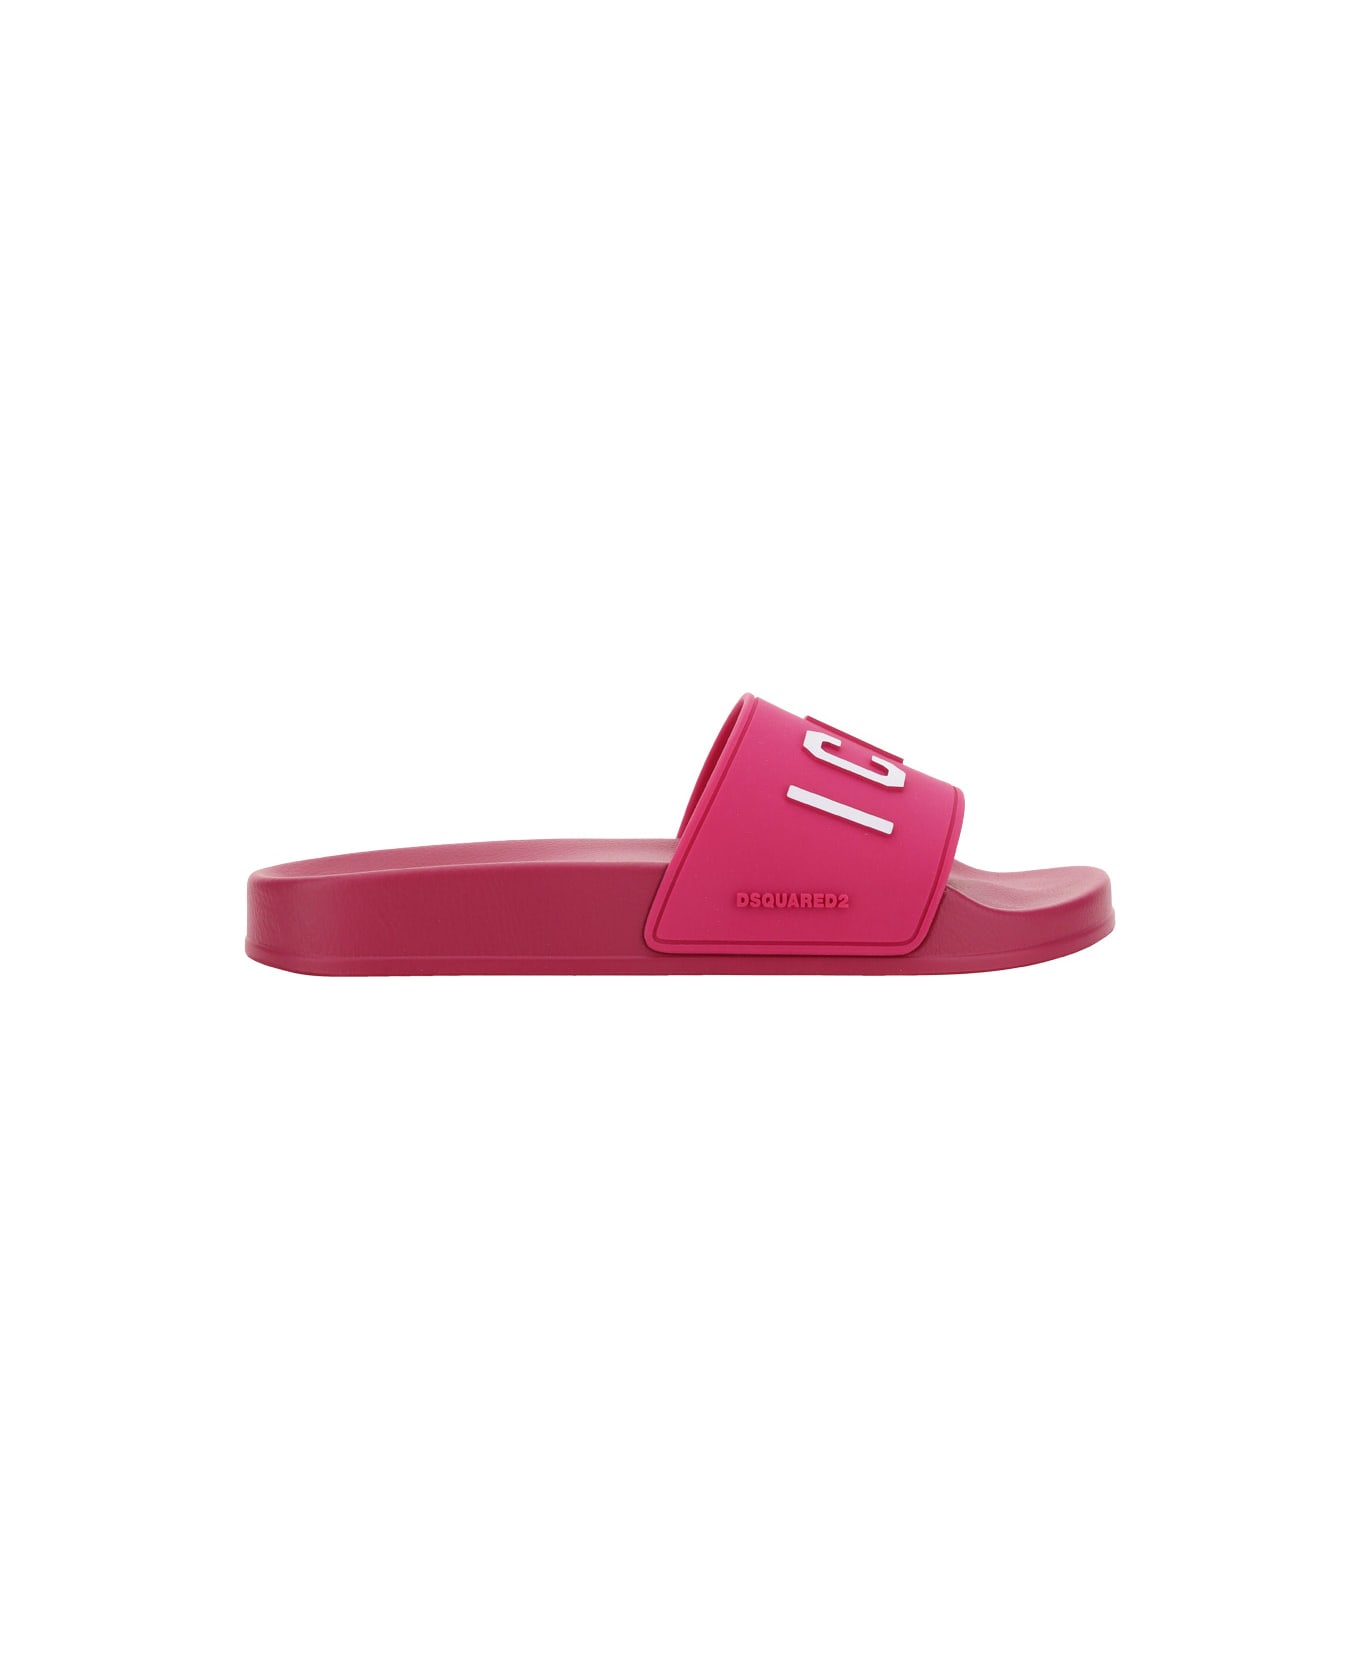 Dsquared2 Slide Shoes - Fucsia サンダル